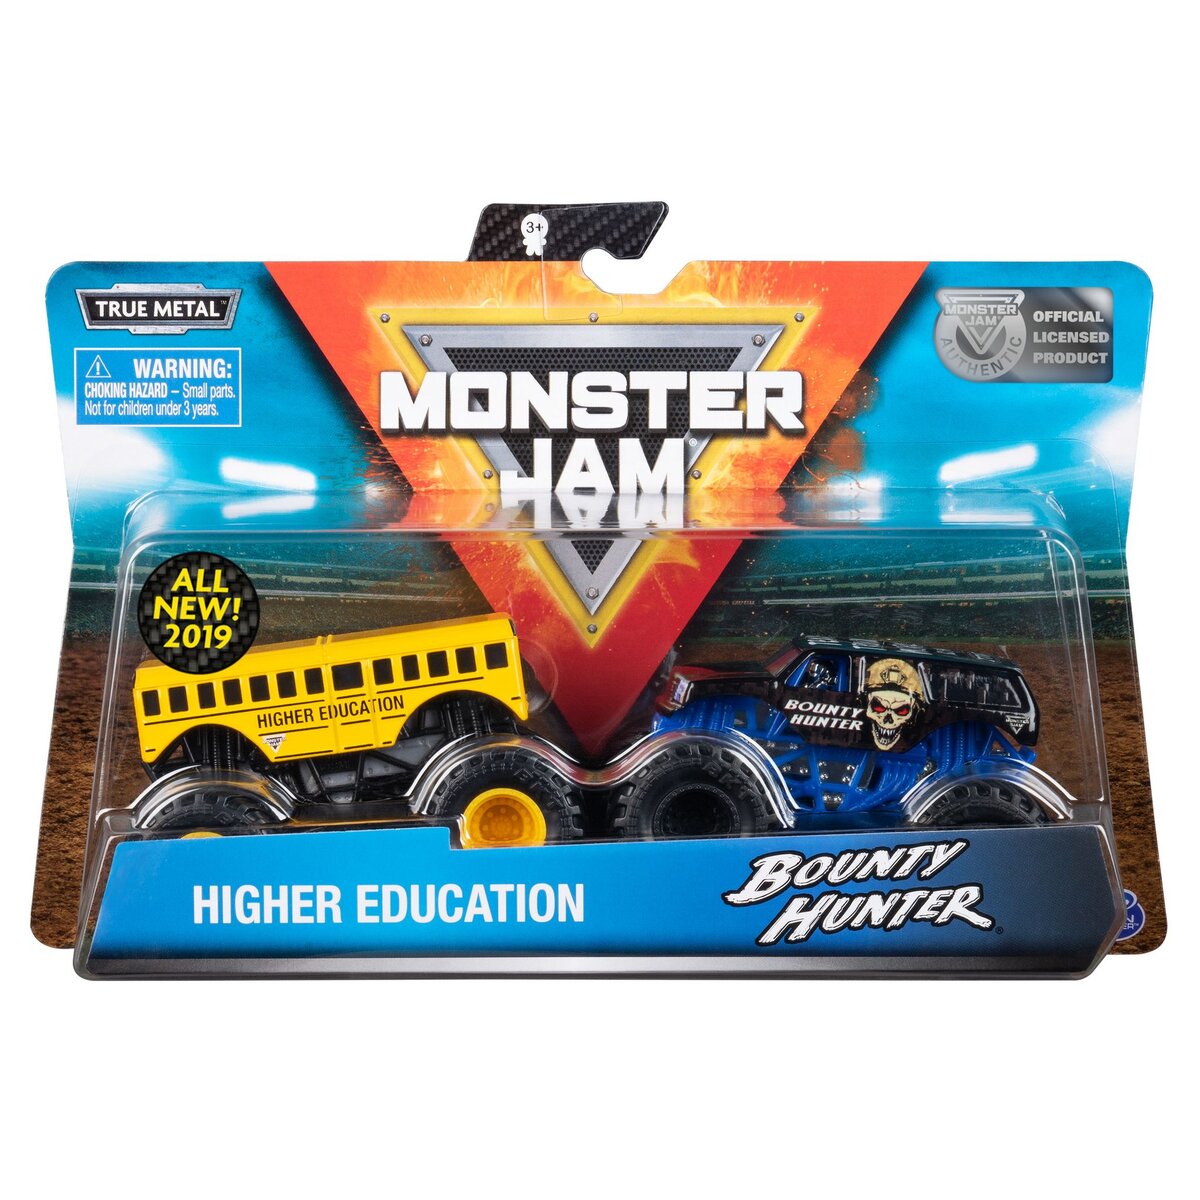 SPIN MASTER Monster Jam - Pack de 2 Monster Trucks 1/64ème